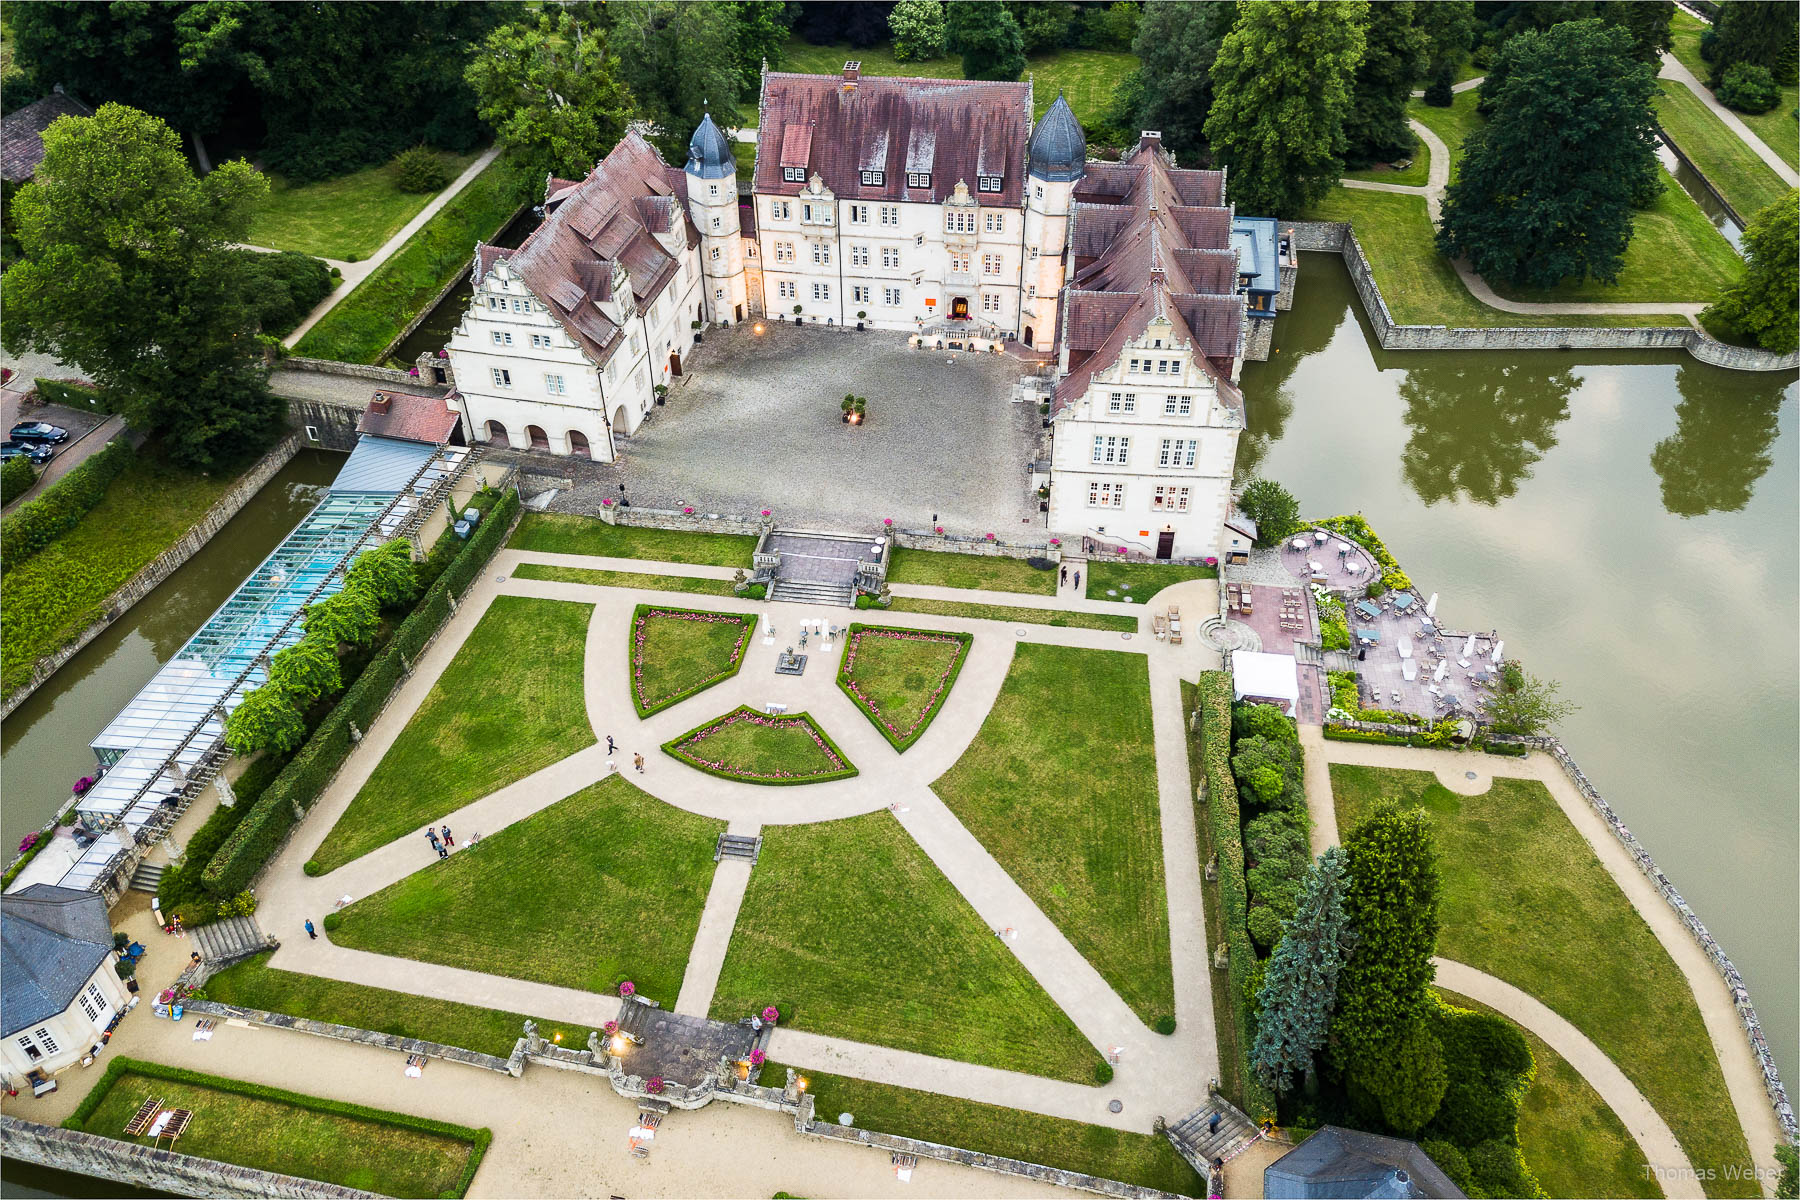 Schlosshochzeit in Norddeutschland, Hochzeitsfotograf Thomas Weber aus Ostfriesland